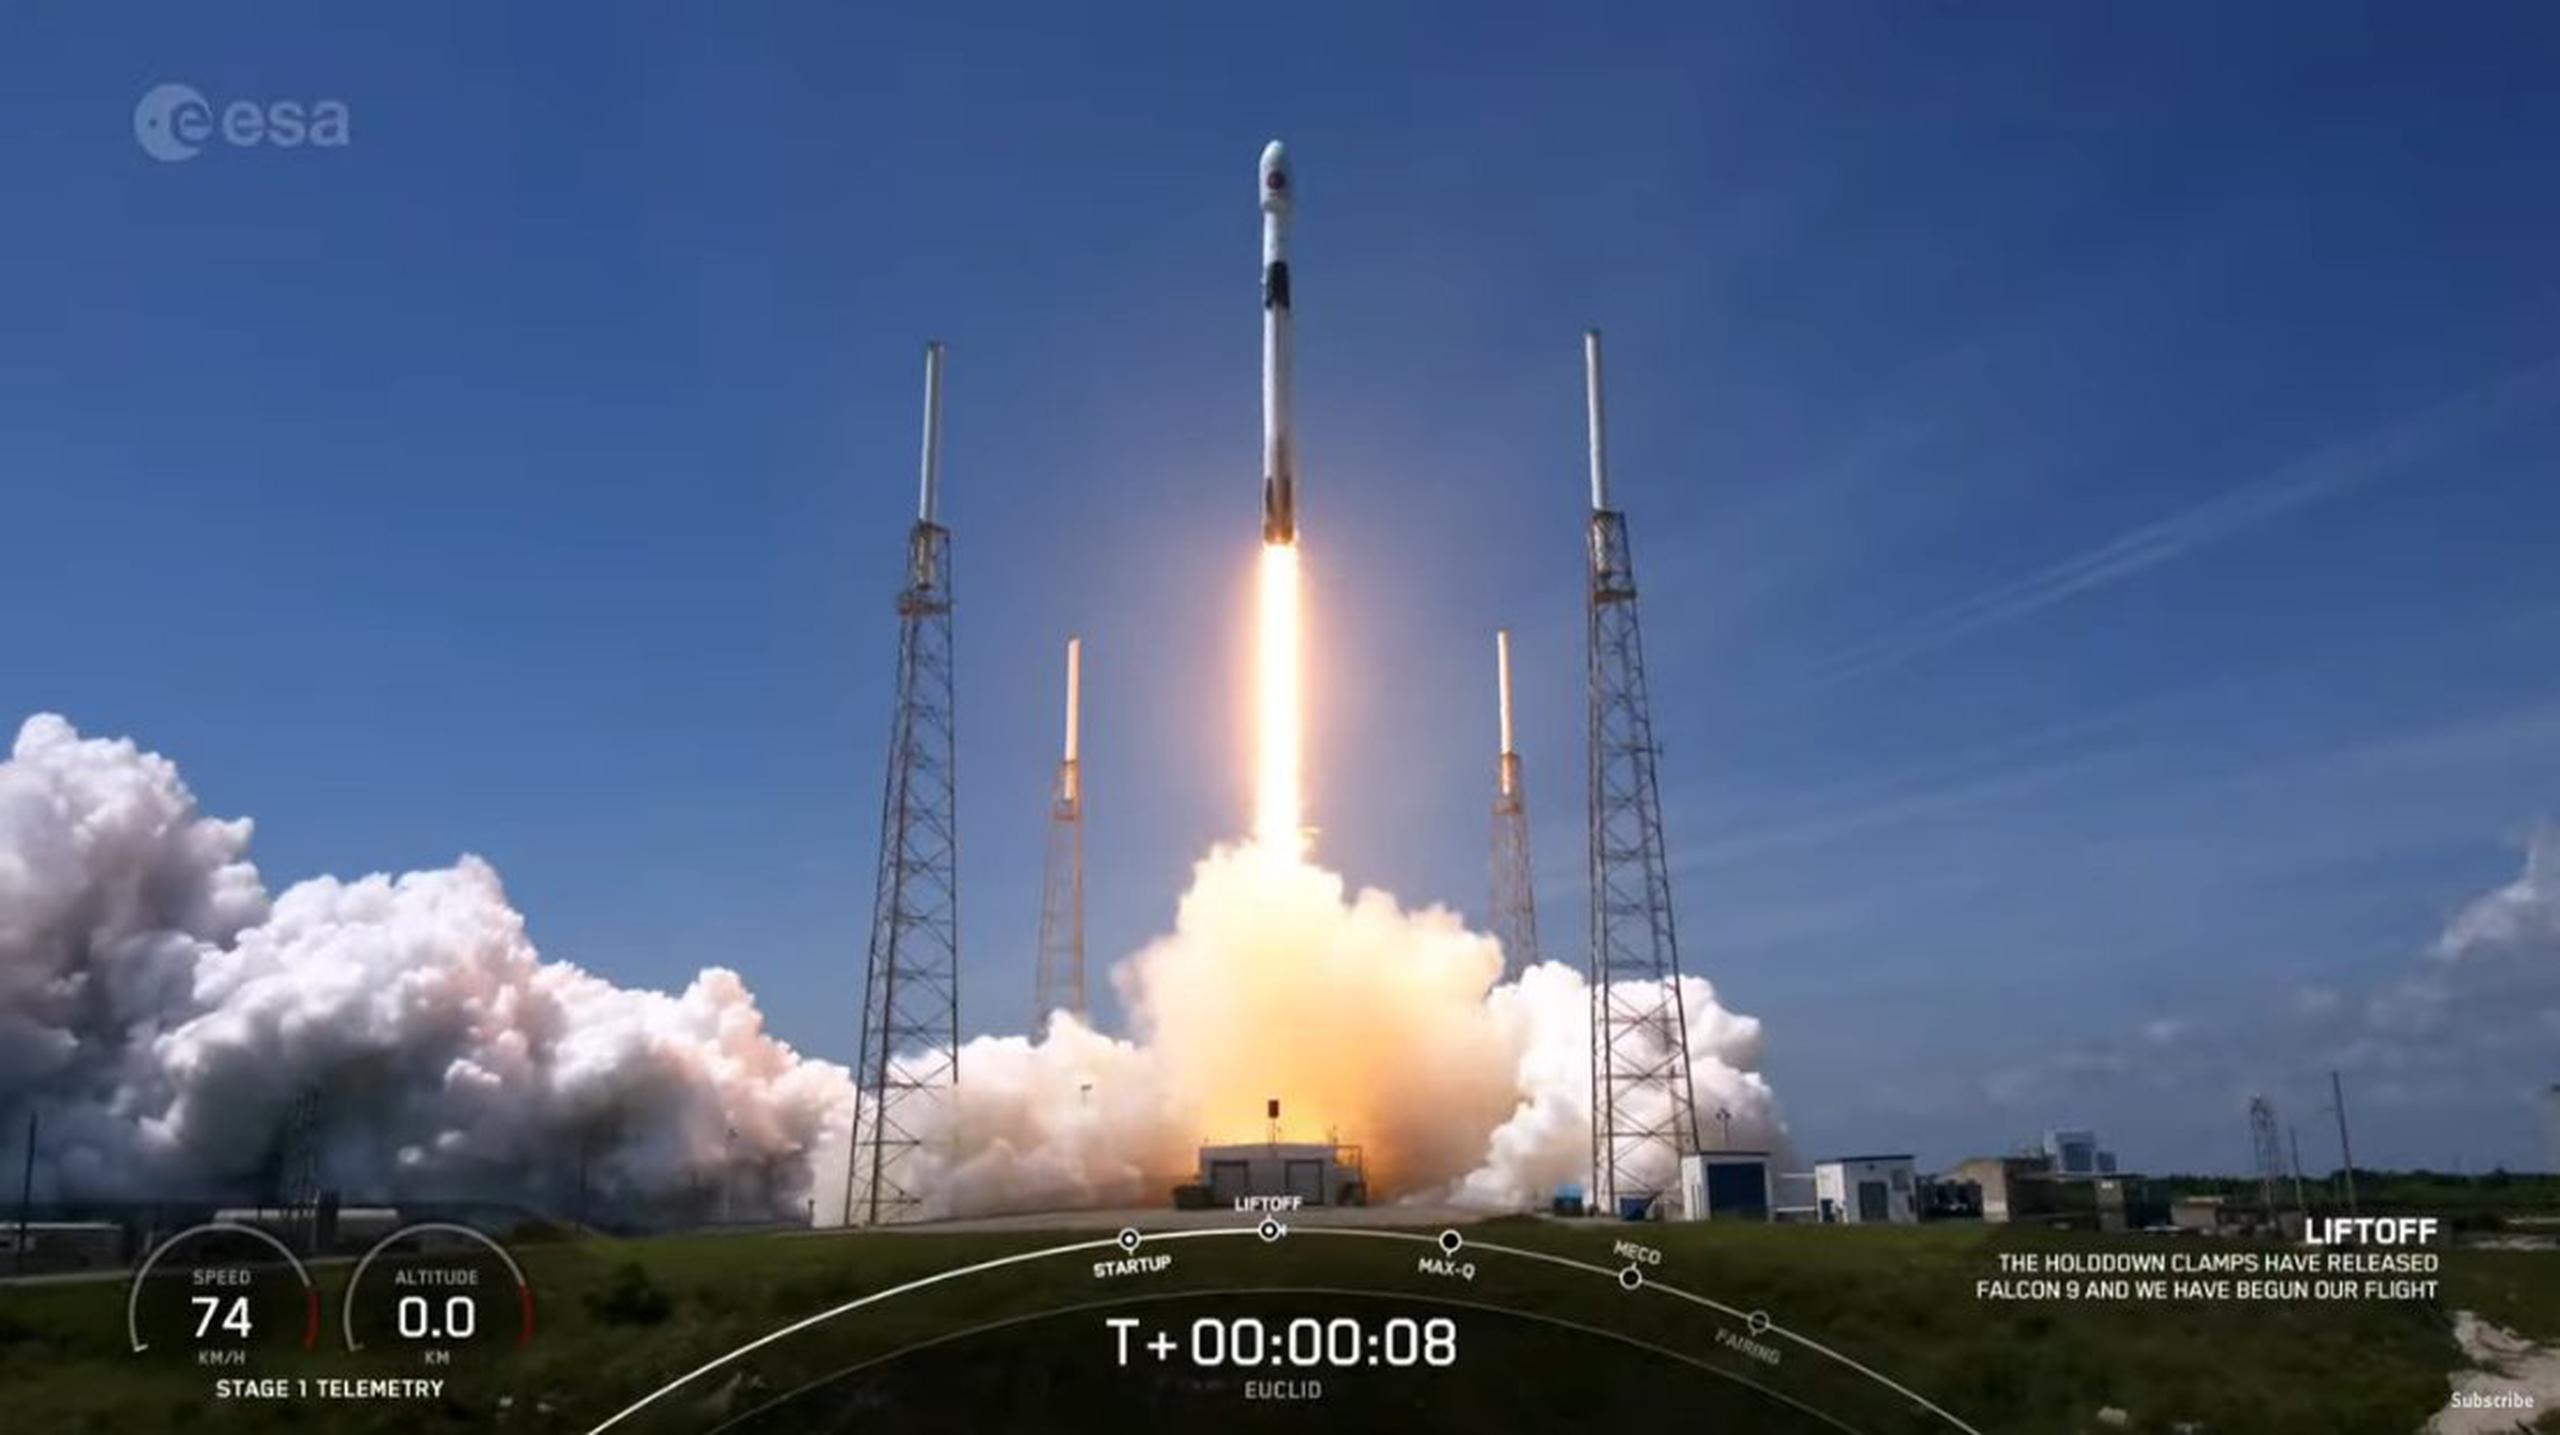 La misión Euclid ha sido lanzada al espacio en un cohete Falcon 9 de SpaceX.